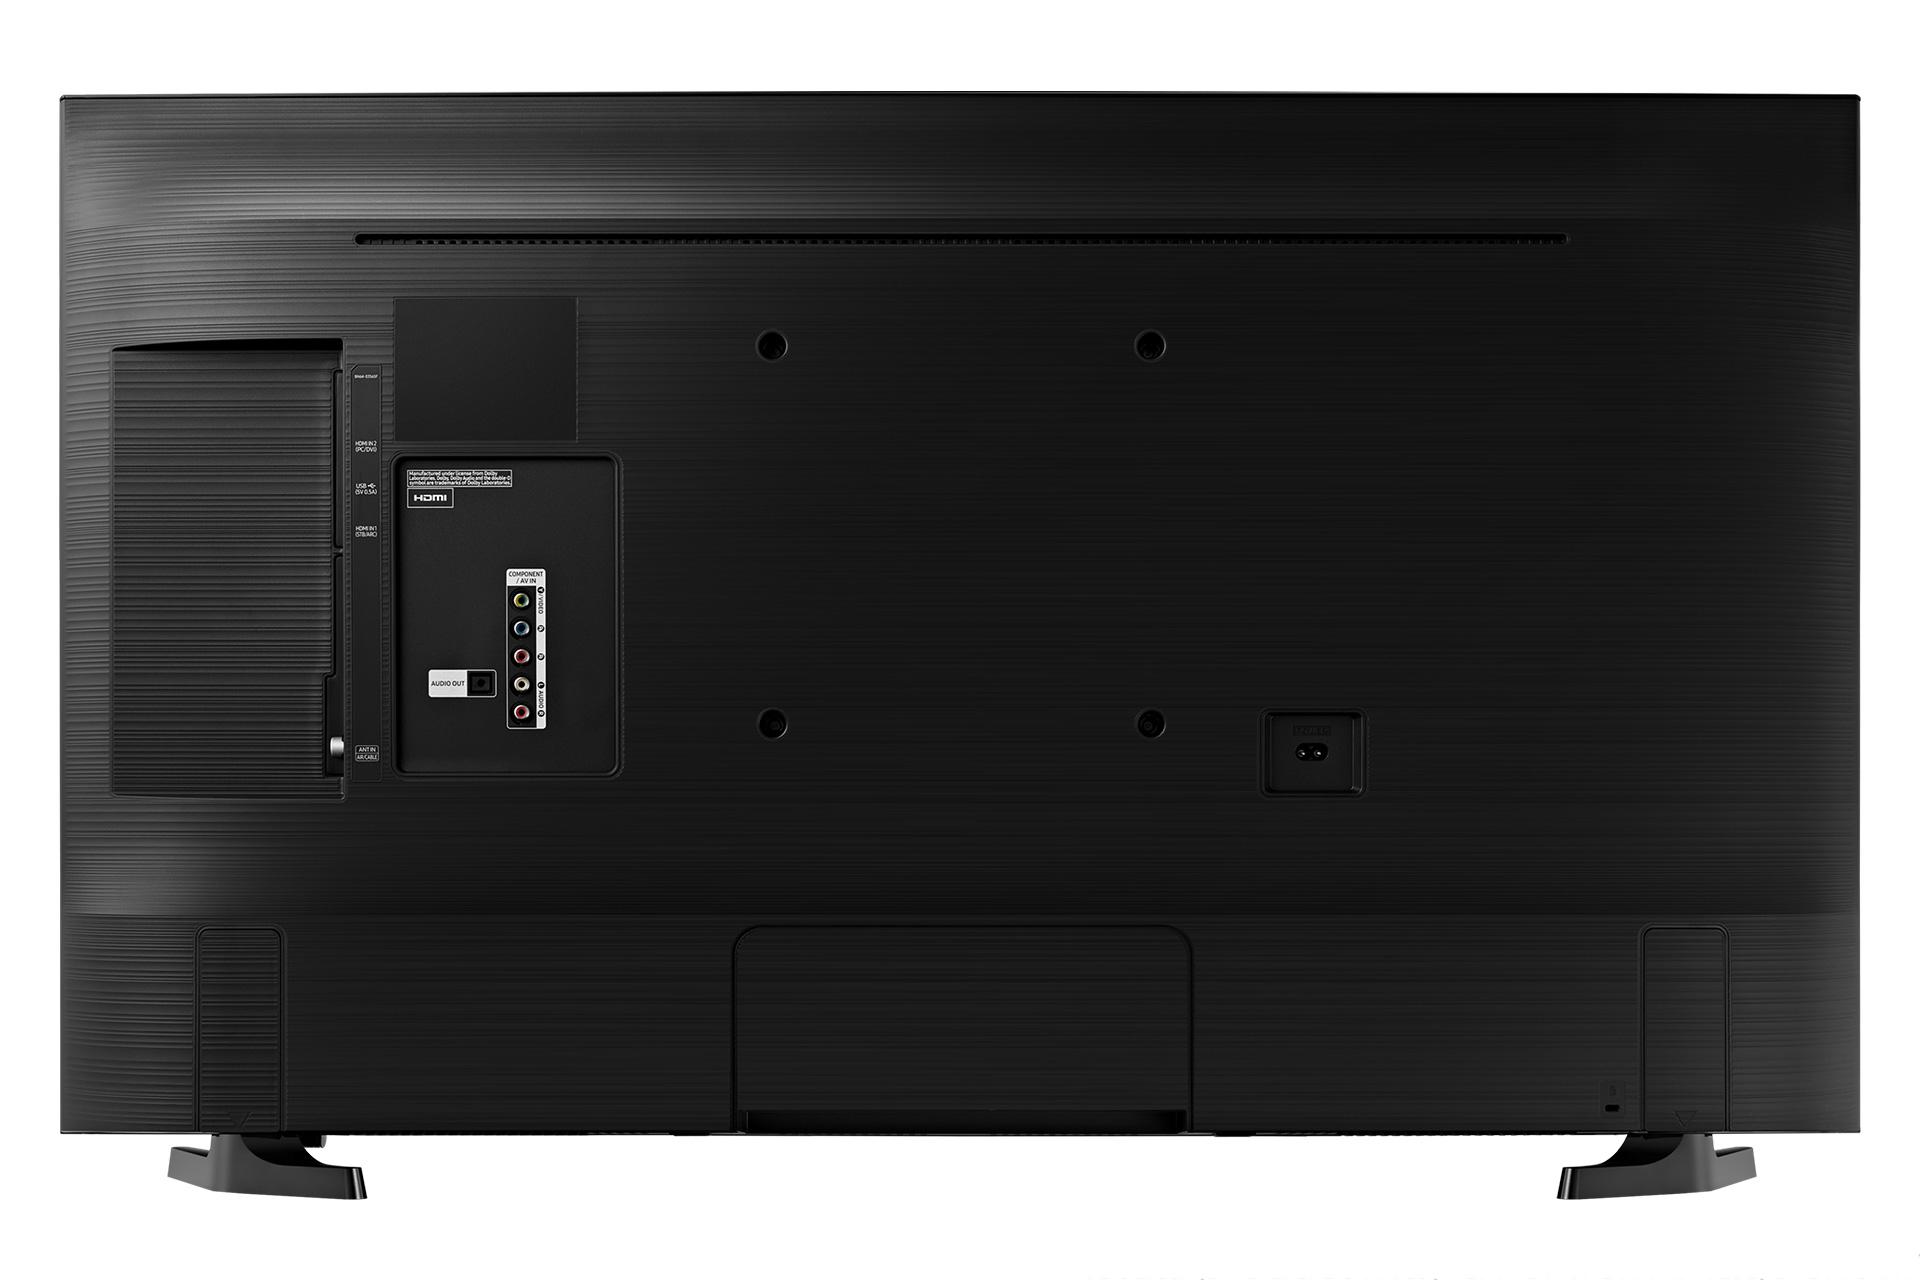 نمای طراحی پشت تلویزیون سامسونگ N5300 مدل 49 اینچ و نمایش پورت ها